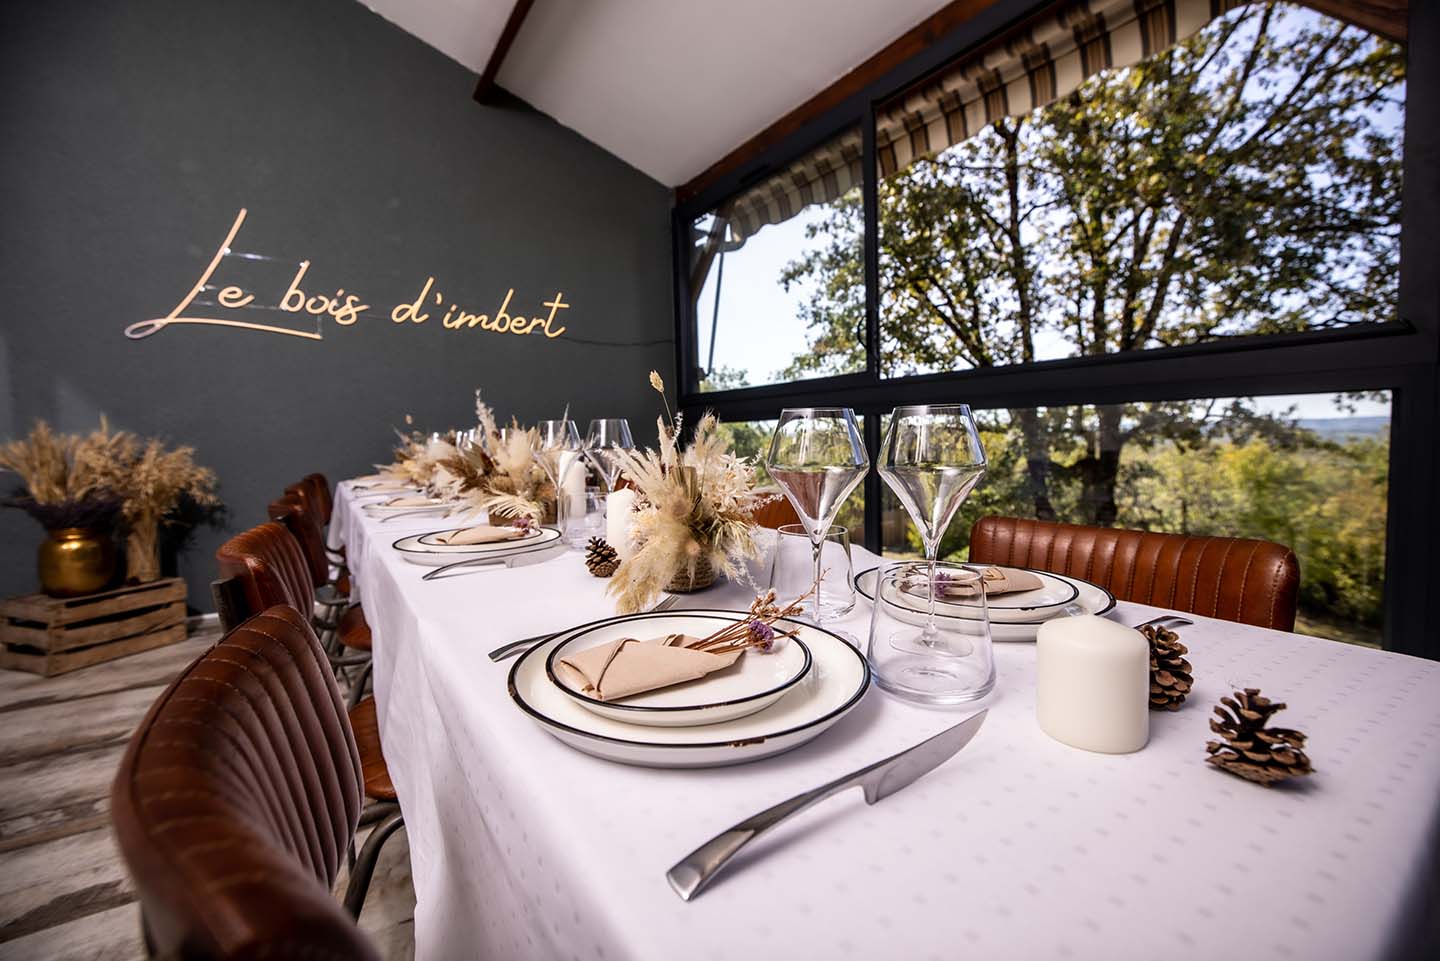 Passez un bon moment avec vos collaborateurs, clients, partenaires en leur proposant un repas à l'hotel Le Bois d'Imbert